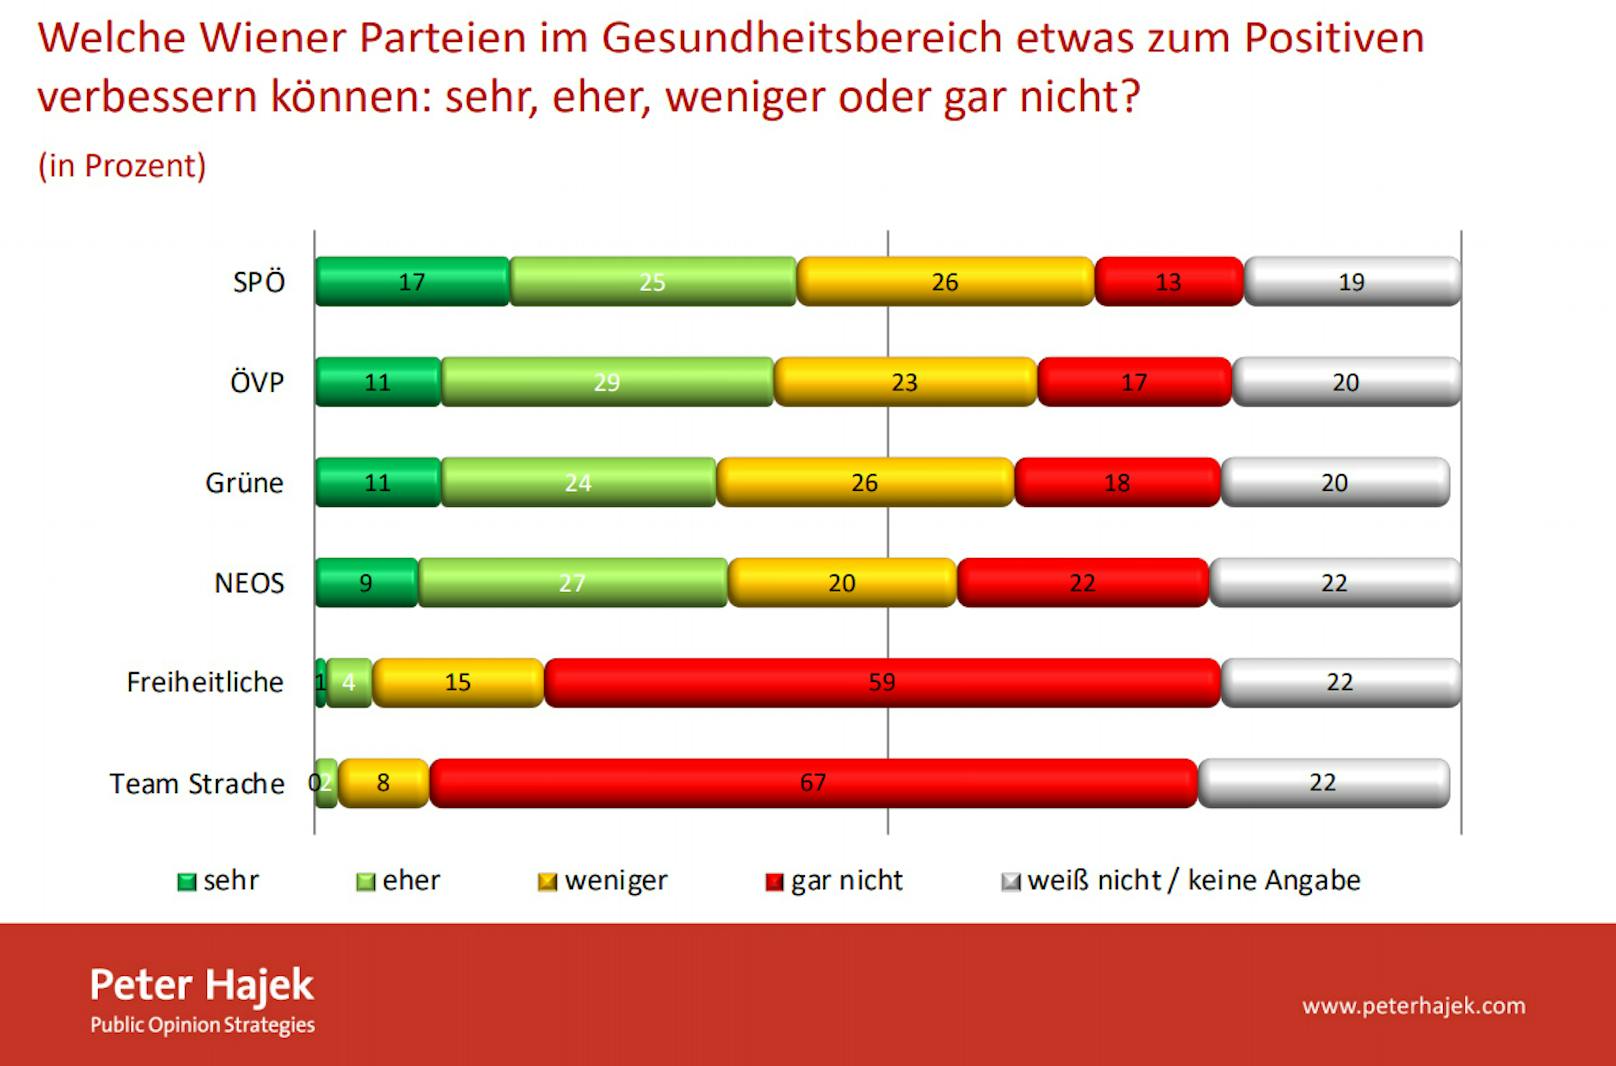 Verbessserungen im Gesundheistwesen trauen die Ärzte vor allem der SPÖ zu. Die ÖVP landet auf dem 2. Platz, die Grünen auf dem 3. Platz. Das Team HC Strache bildet das Schlusslicht.